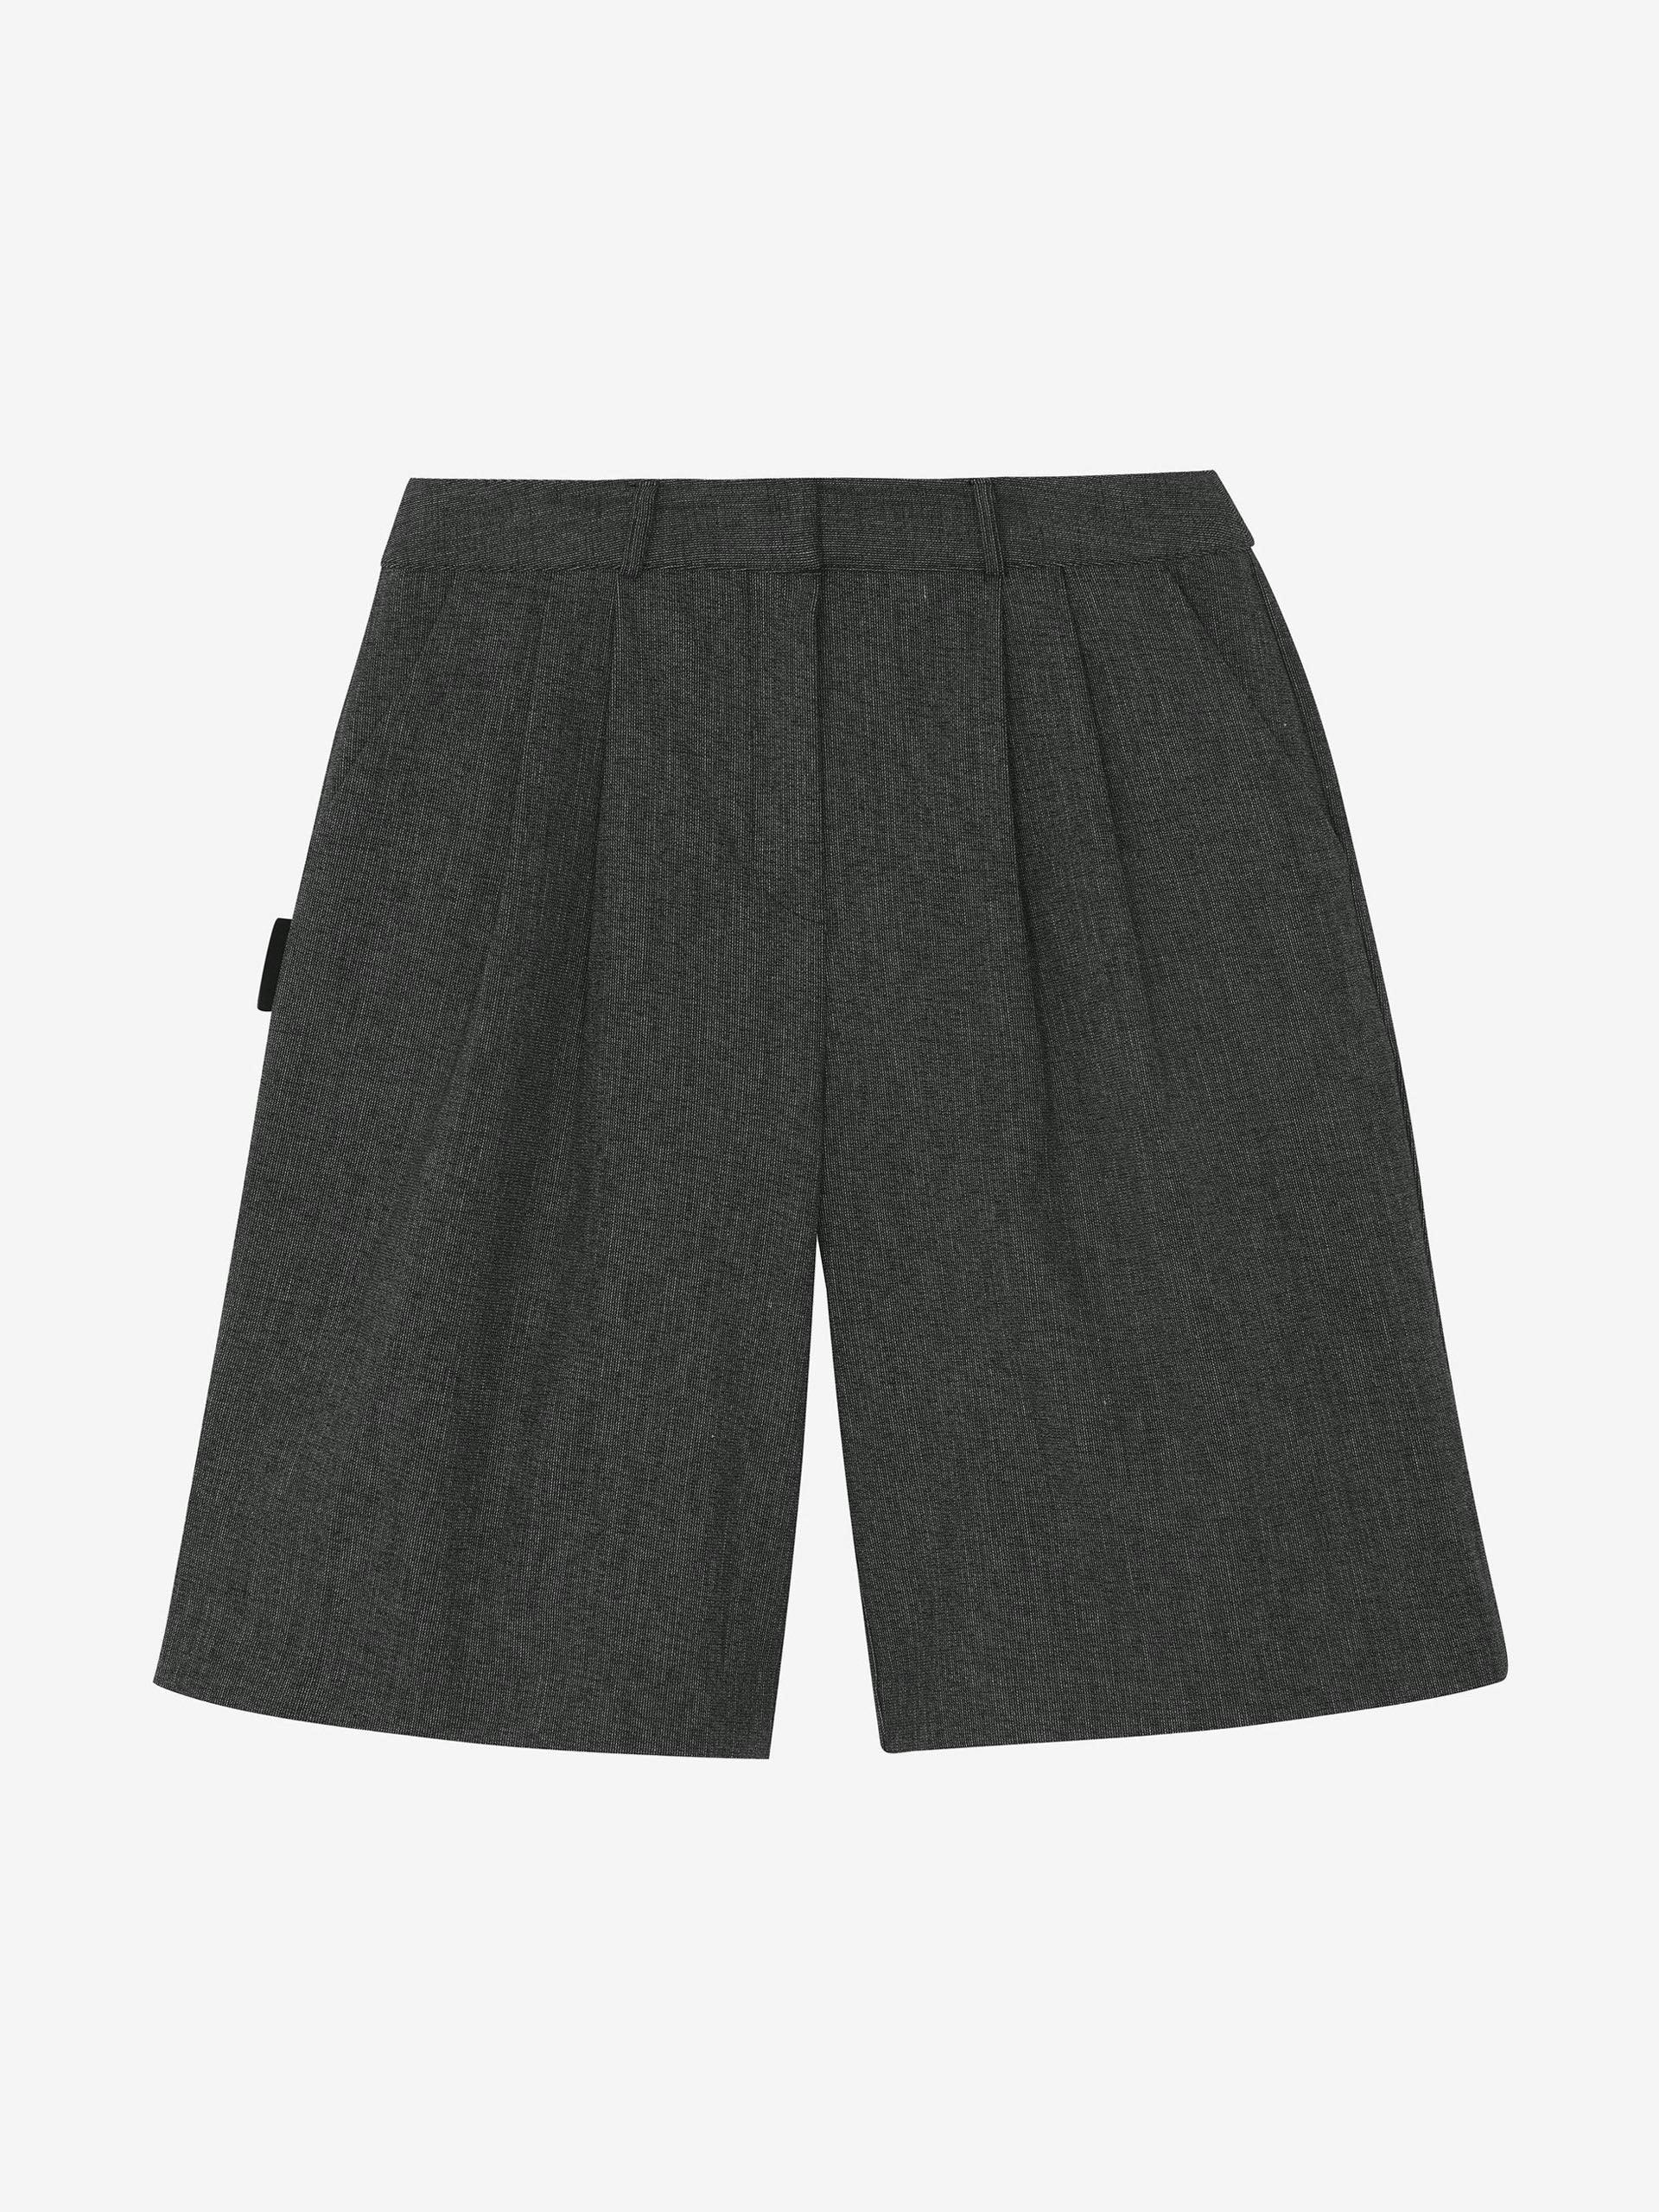 Isara pleated dark grey shorts